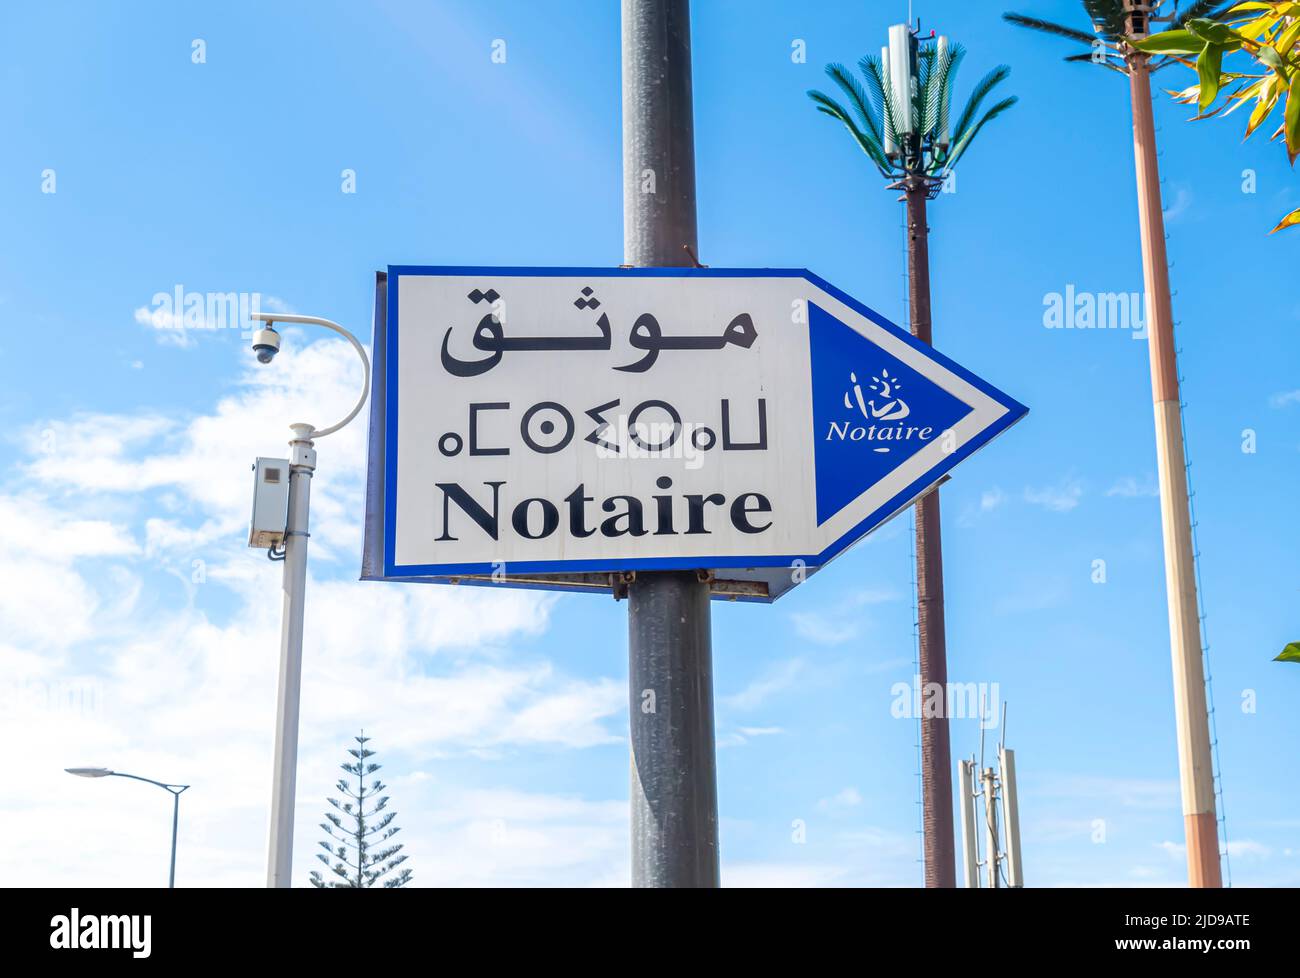 Notaire - notaire - direction de rue en français, berbère, et arabe à Casablanca, Maroc Banque D'Images